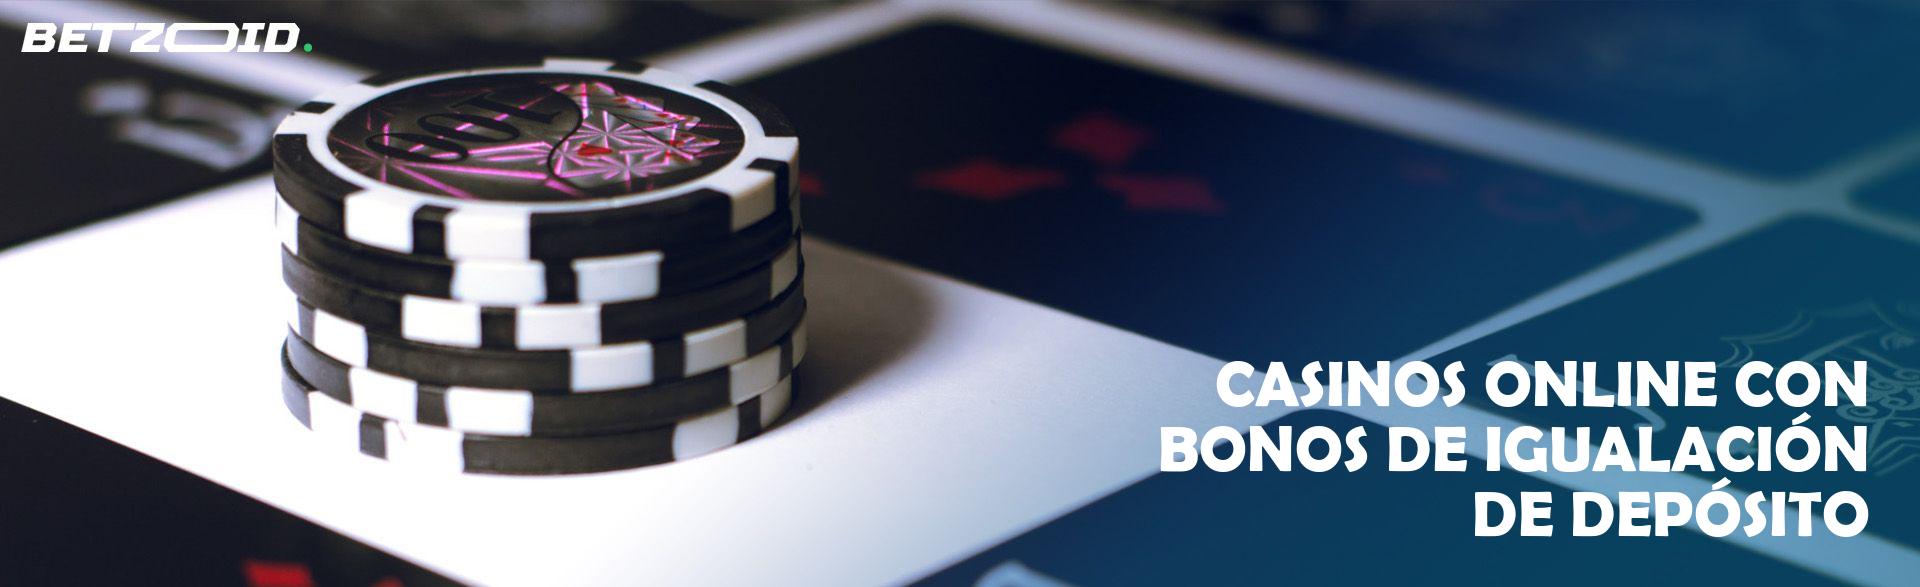 Casinos Online con Bonos de Igualación de Depósito.